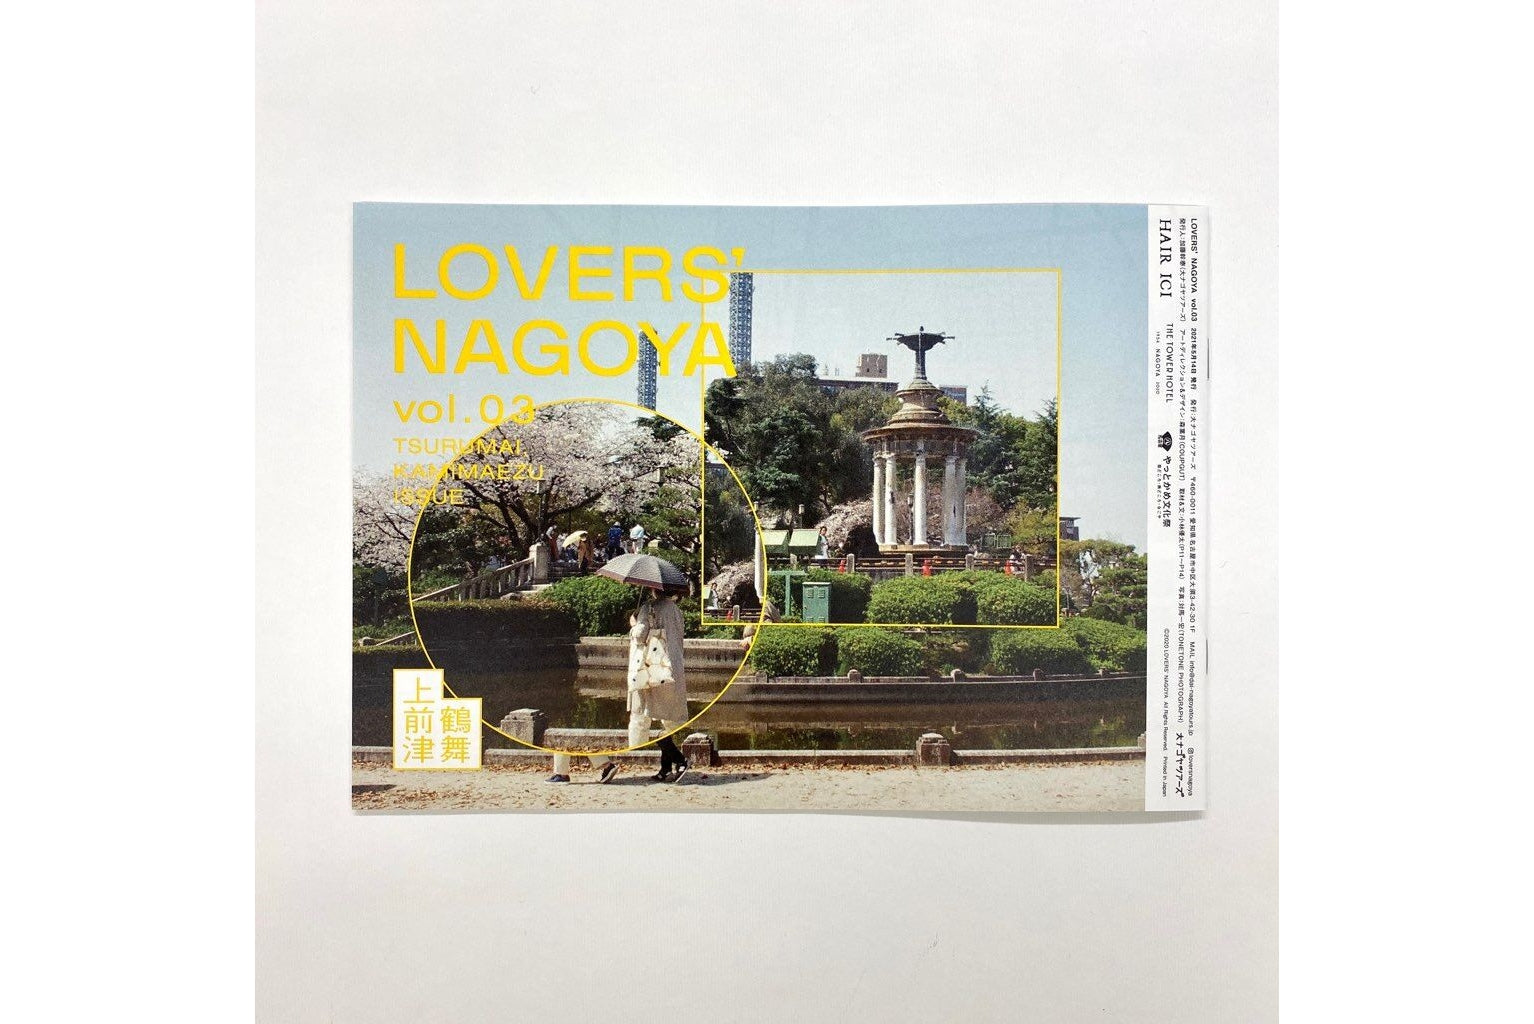 LOVER'S NAGOYA Vol.3